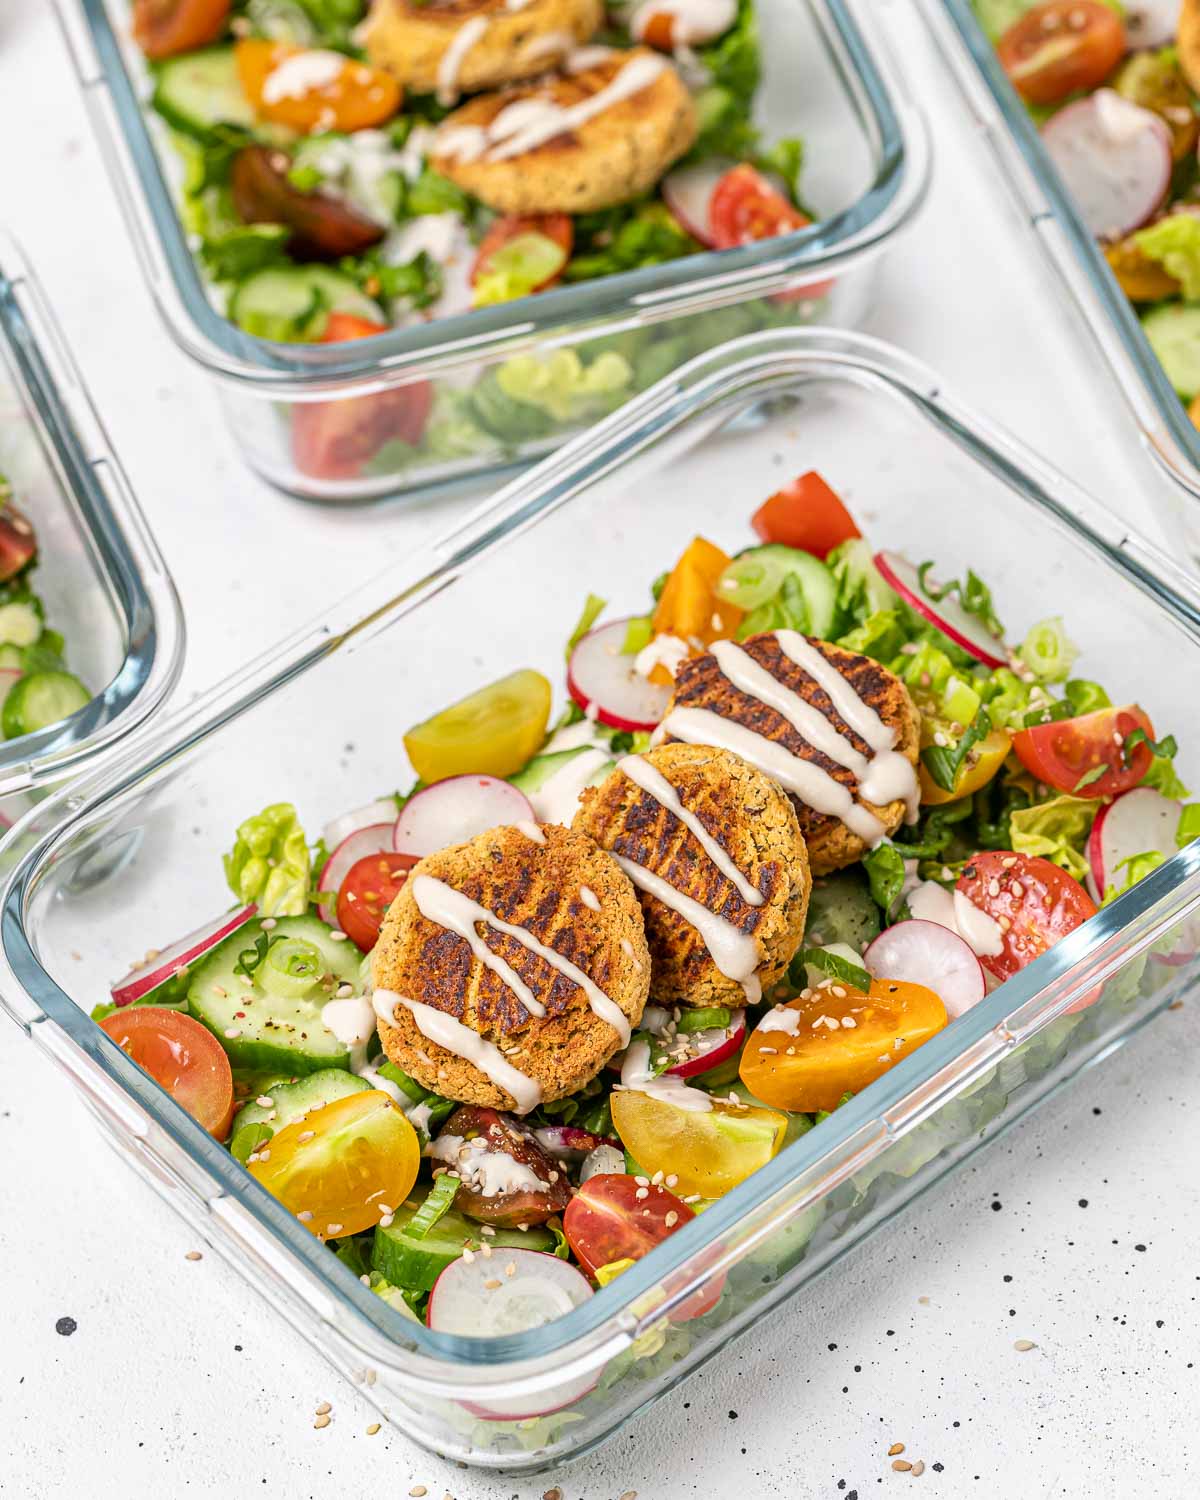 https://cleanfoodcrush.com/wp-content/uploads/2023/05/Falafel-Salad-Meal-Prep-Bowls-quick-n-easy.jpg